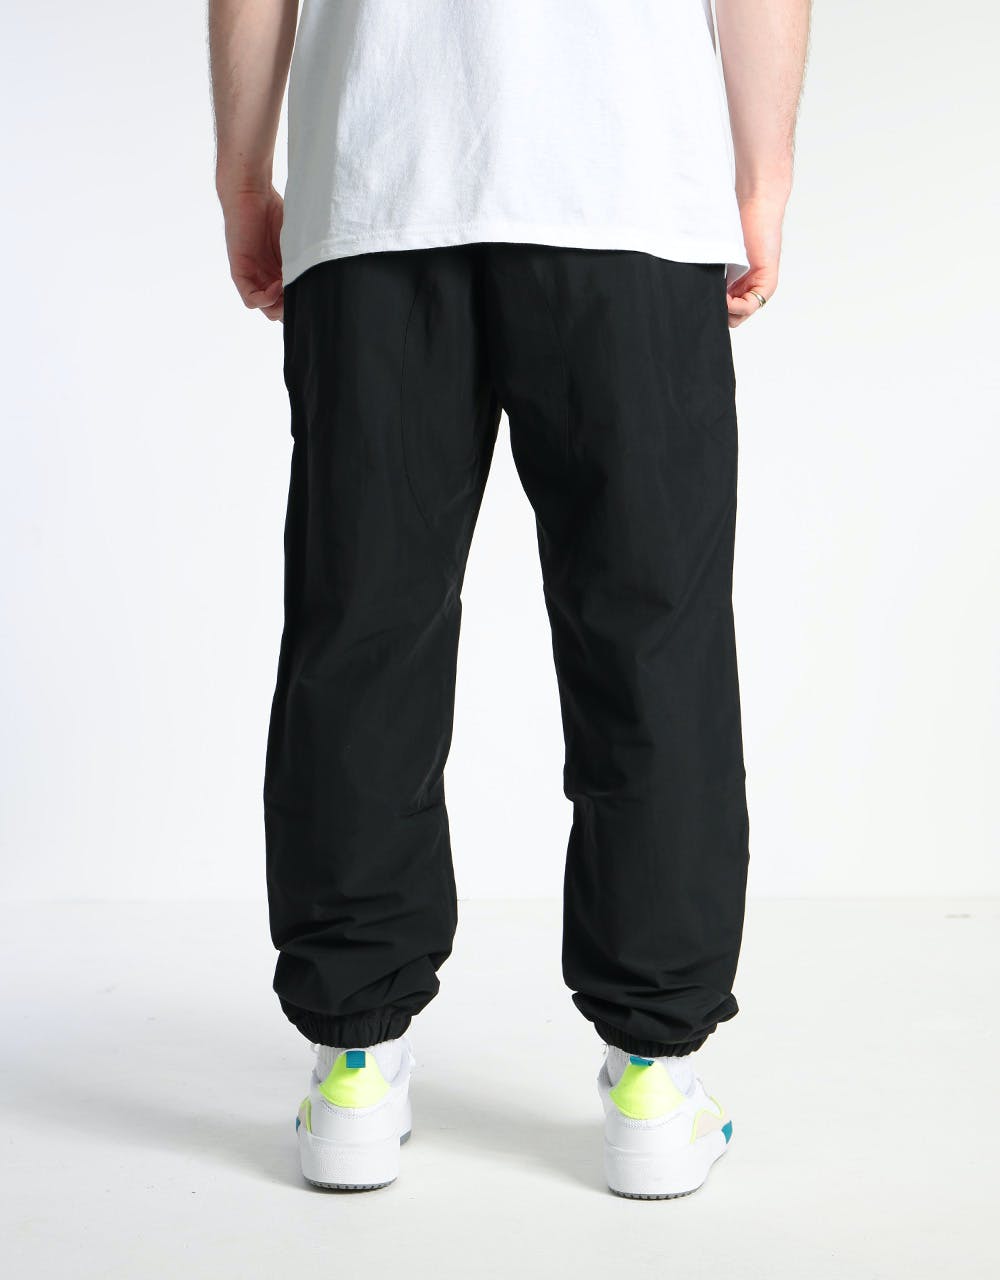 Adidas Workshop Pants  - Black